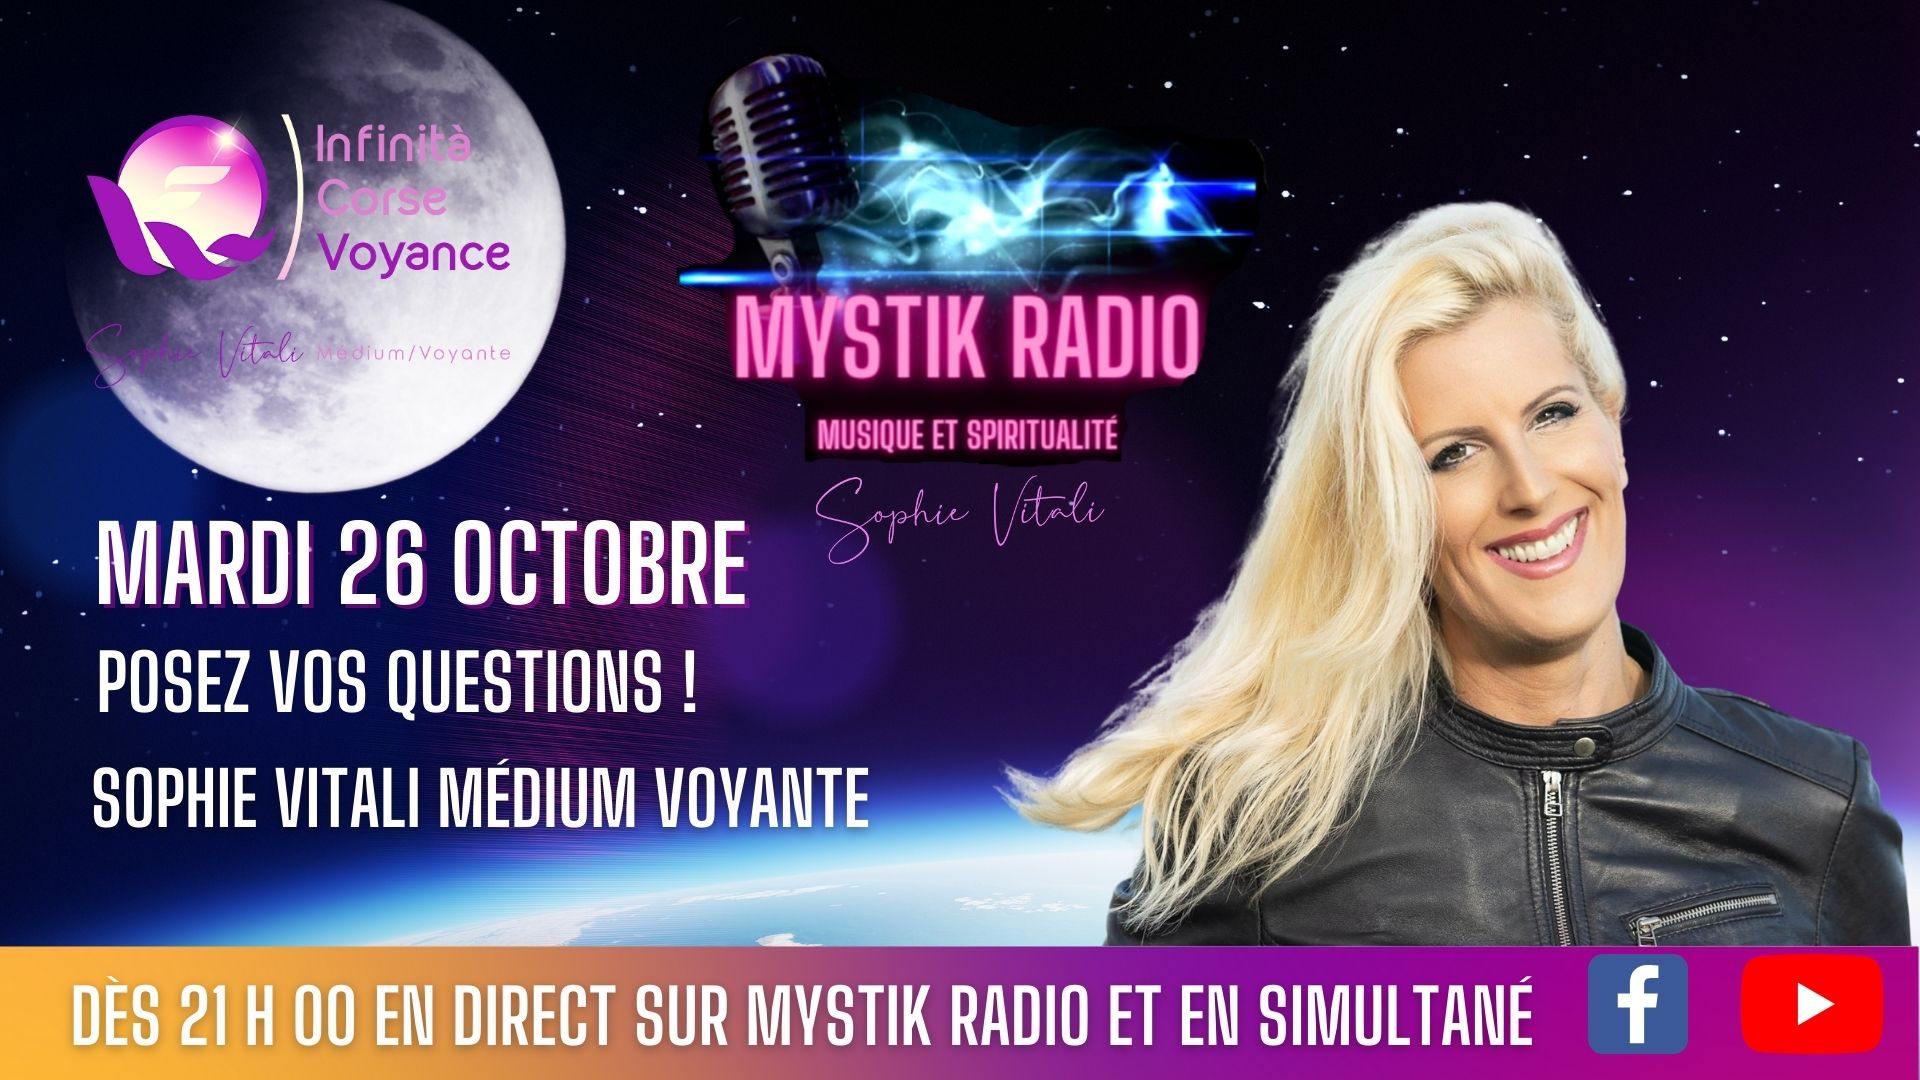 Sophie Vitali répond à vos questions en direct sur Mystik Radio le 26 octobre 2021 dès 21 h 00